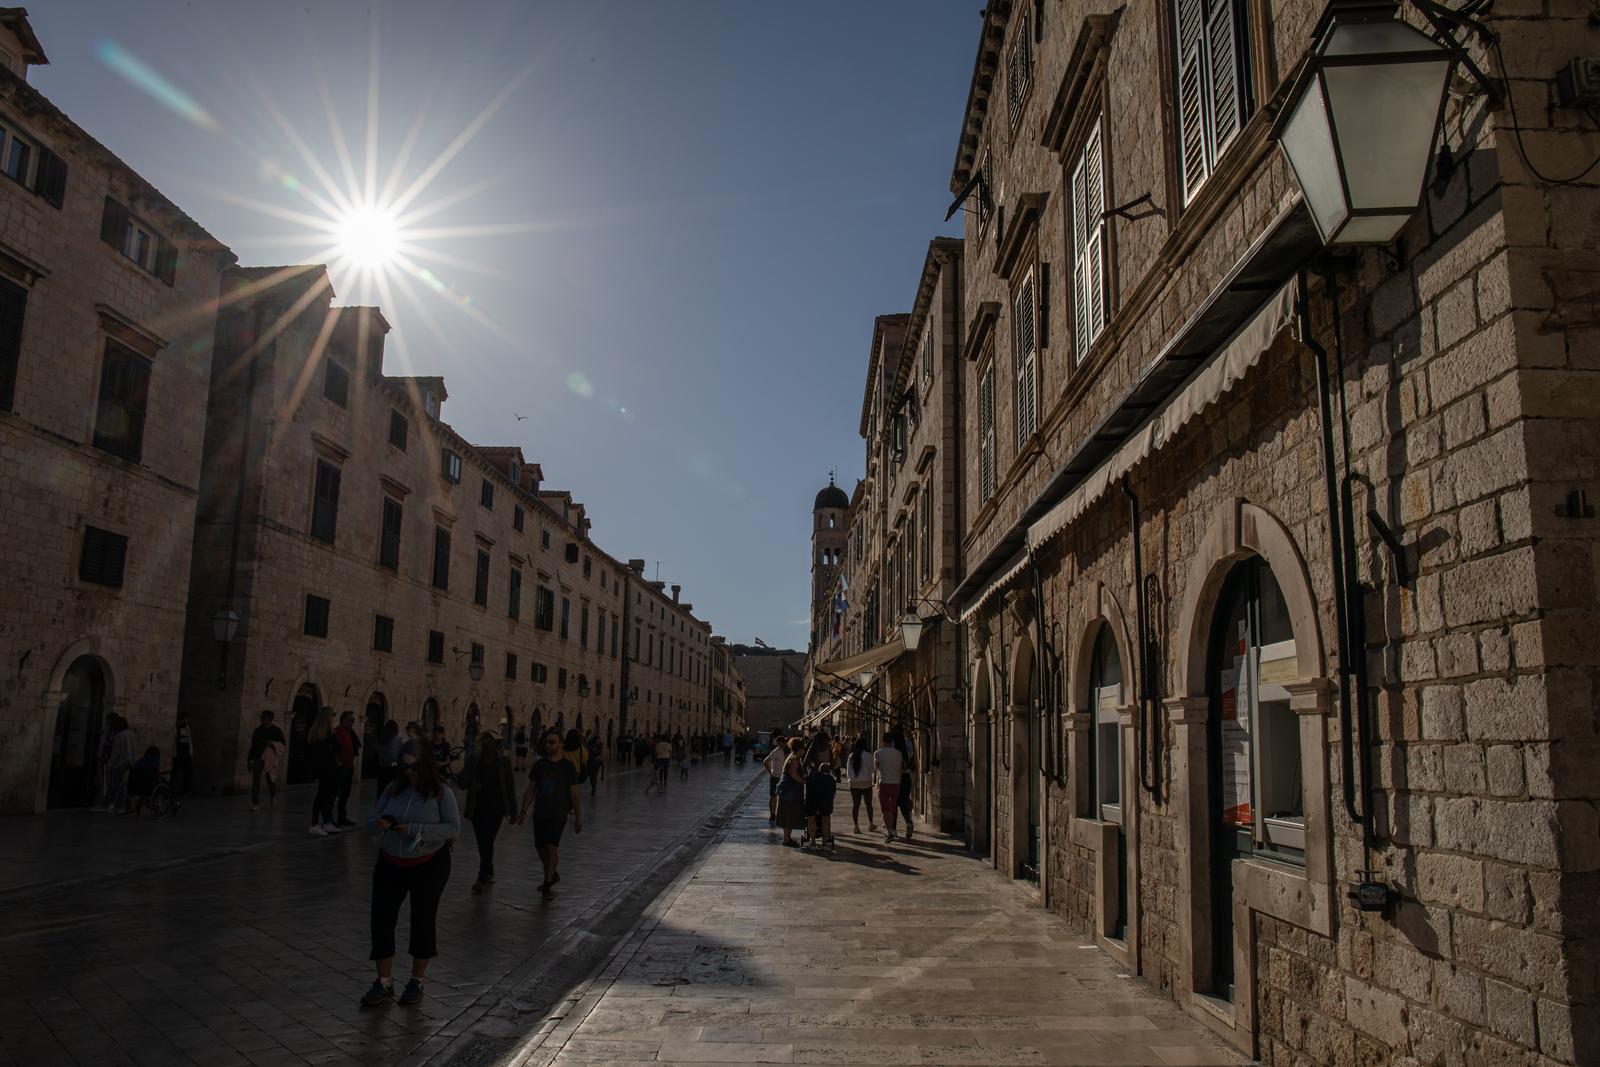 14.04.2022., Stara gradska jezgra, Dubrovnik - Gradski kadrovi. Popodnevna setnja gradom. Photo: Grgo Jelavic/PIXSELL